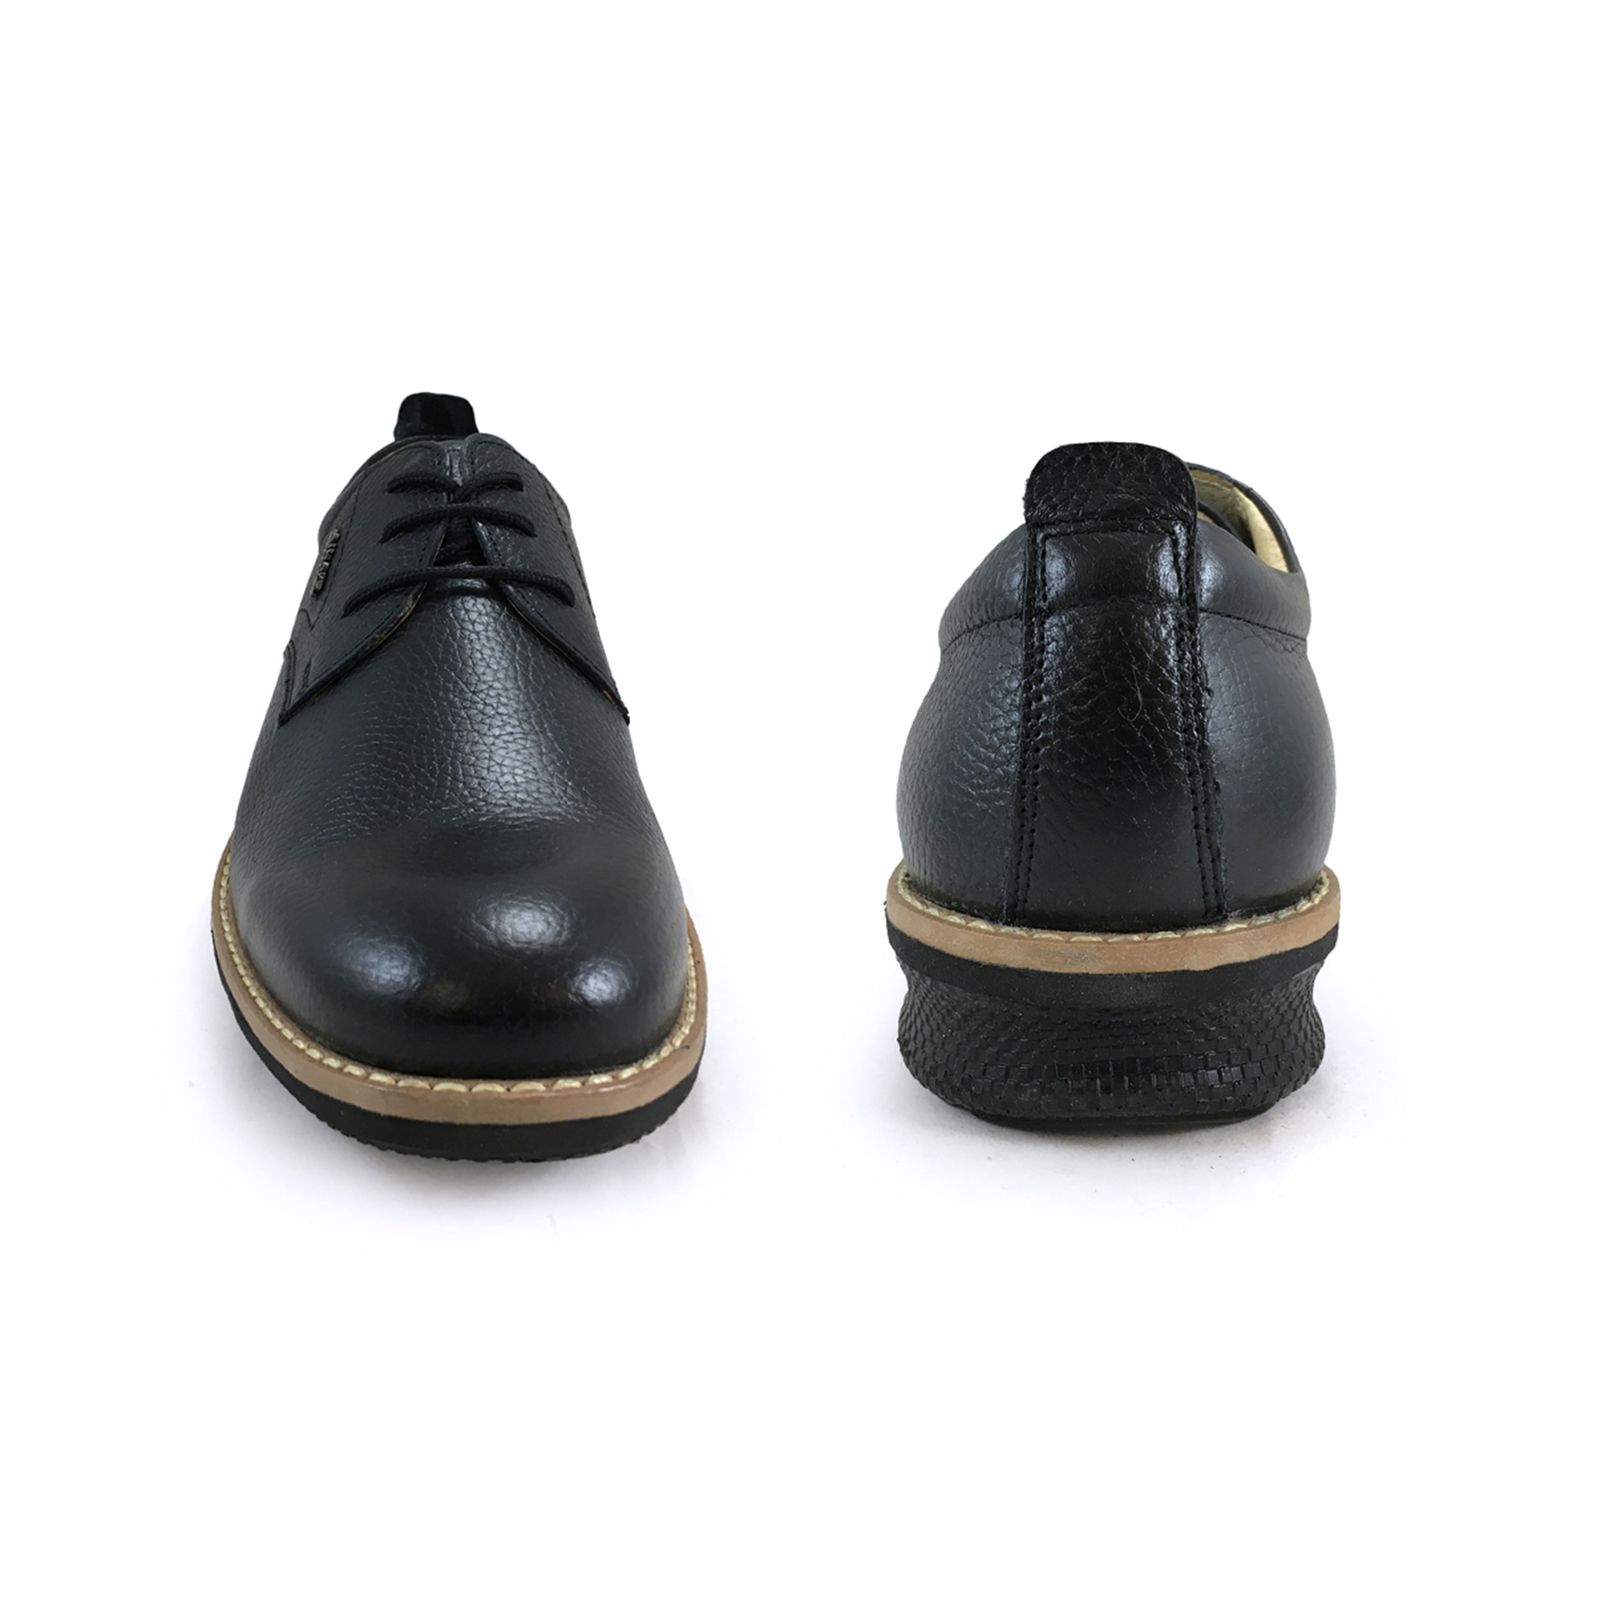 کفش روزمره مردانه شرکت کفش البرز مدل HMN کد 2924-3 -  - 10